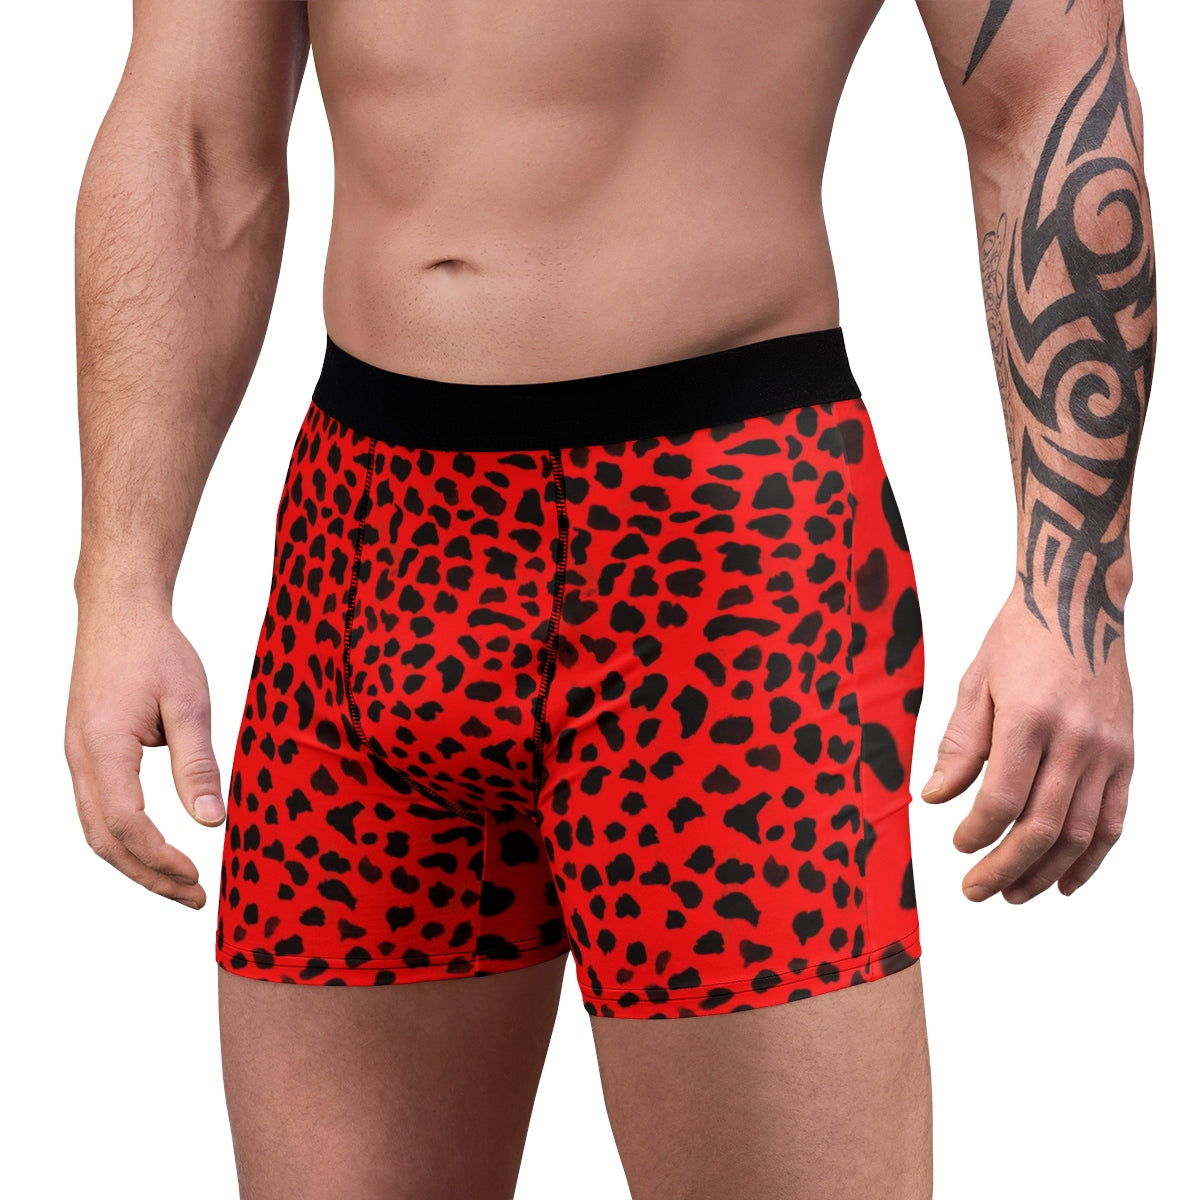 Hot Red Cheetah Underwear, Red Cheetah Or Leopard Animal Print Men's Boxer  Briefs Underwear (US Size: XS-3XL)